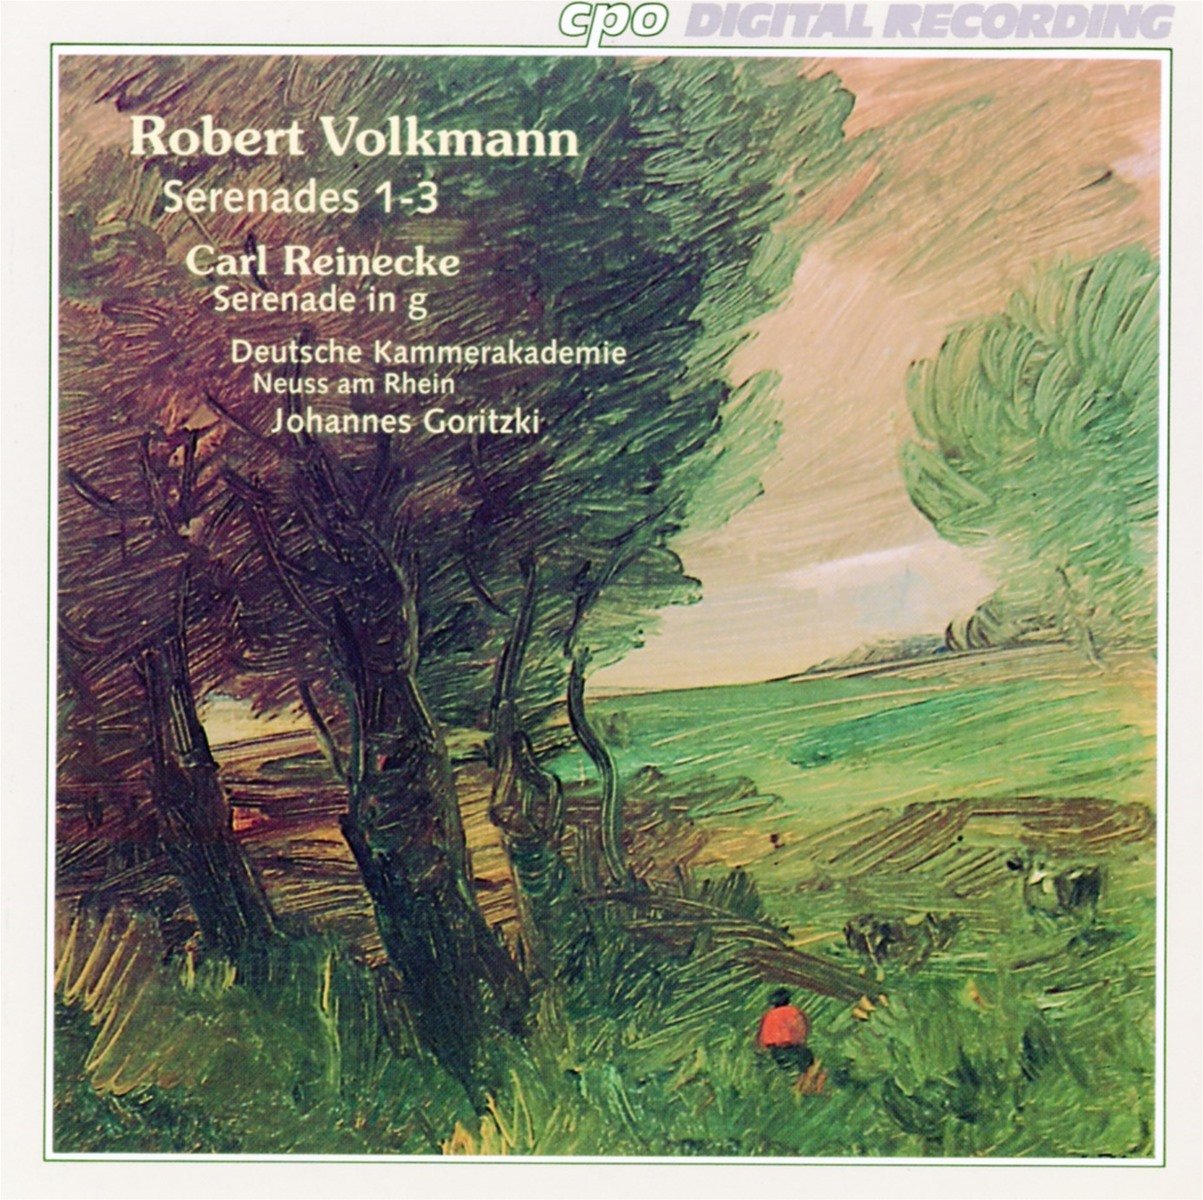 Robert Volkmann, Carl Reinecke: Serenades